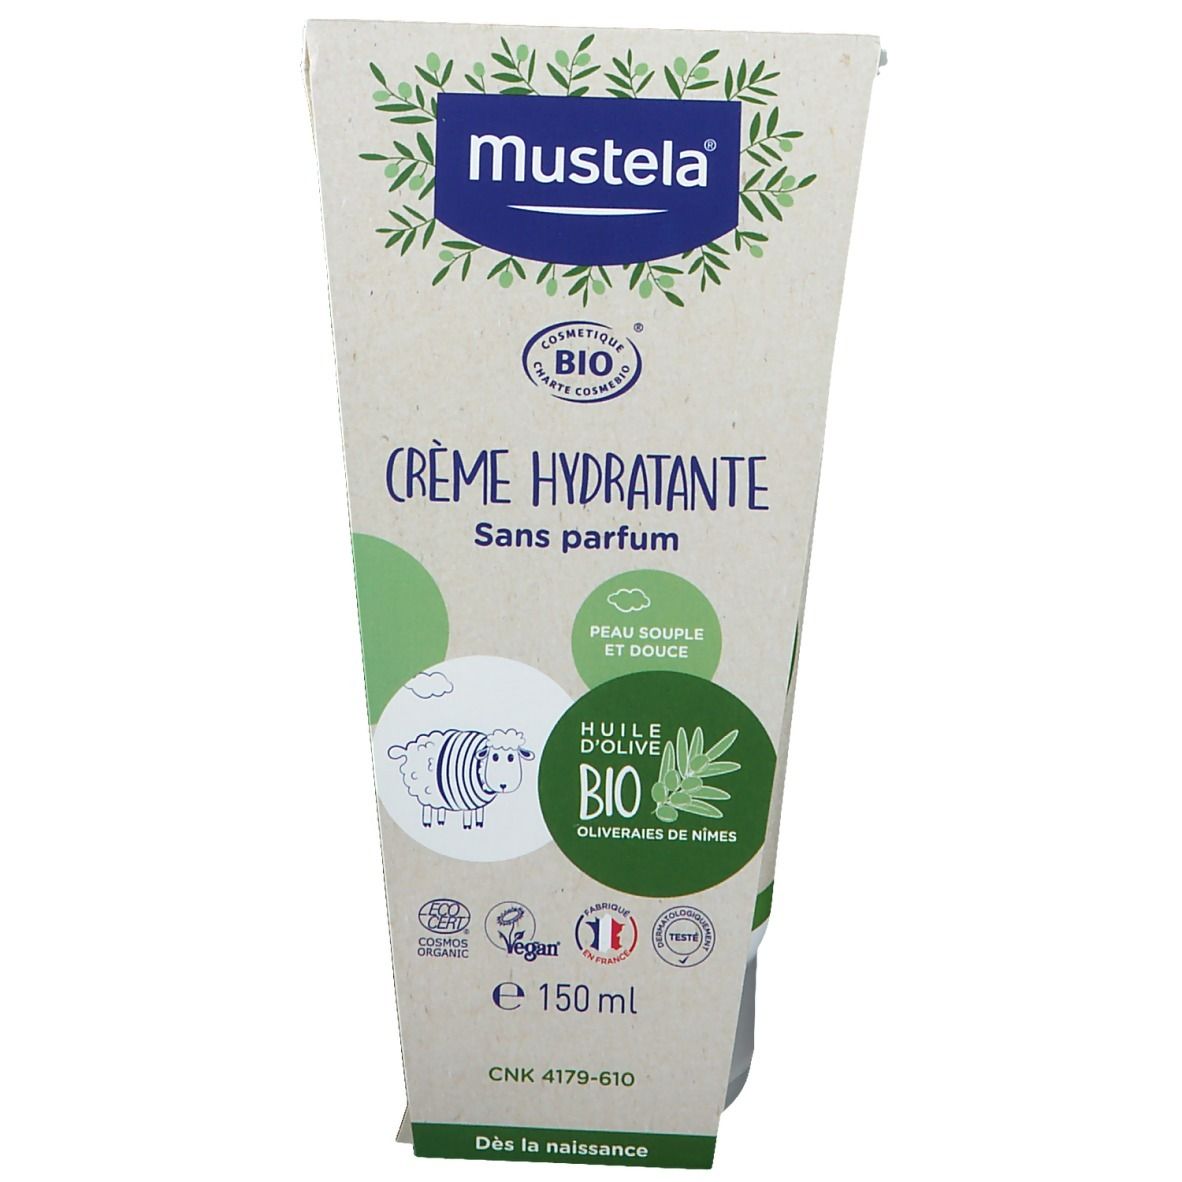 mustela® Crème hydratante certifiée BIO